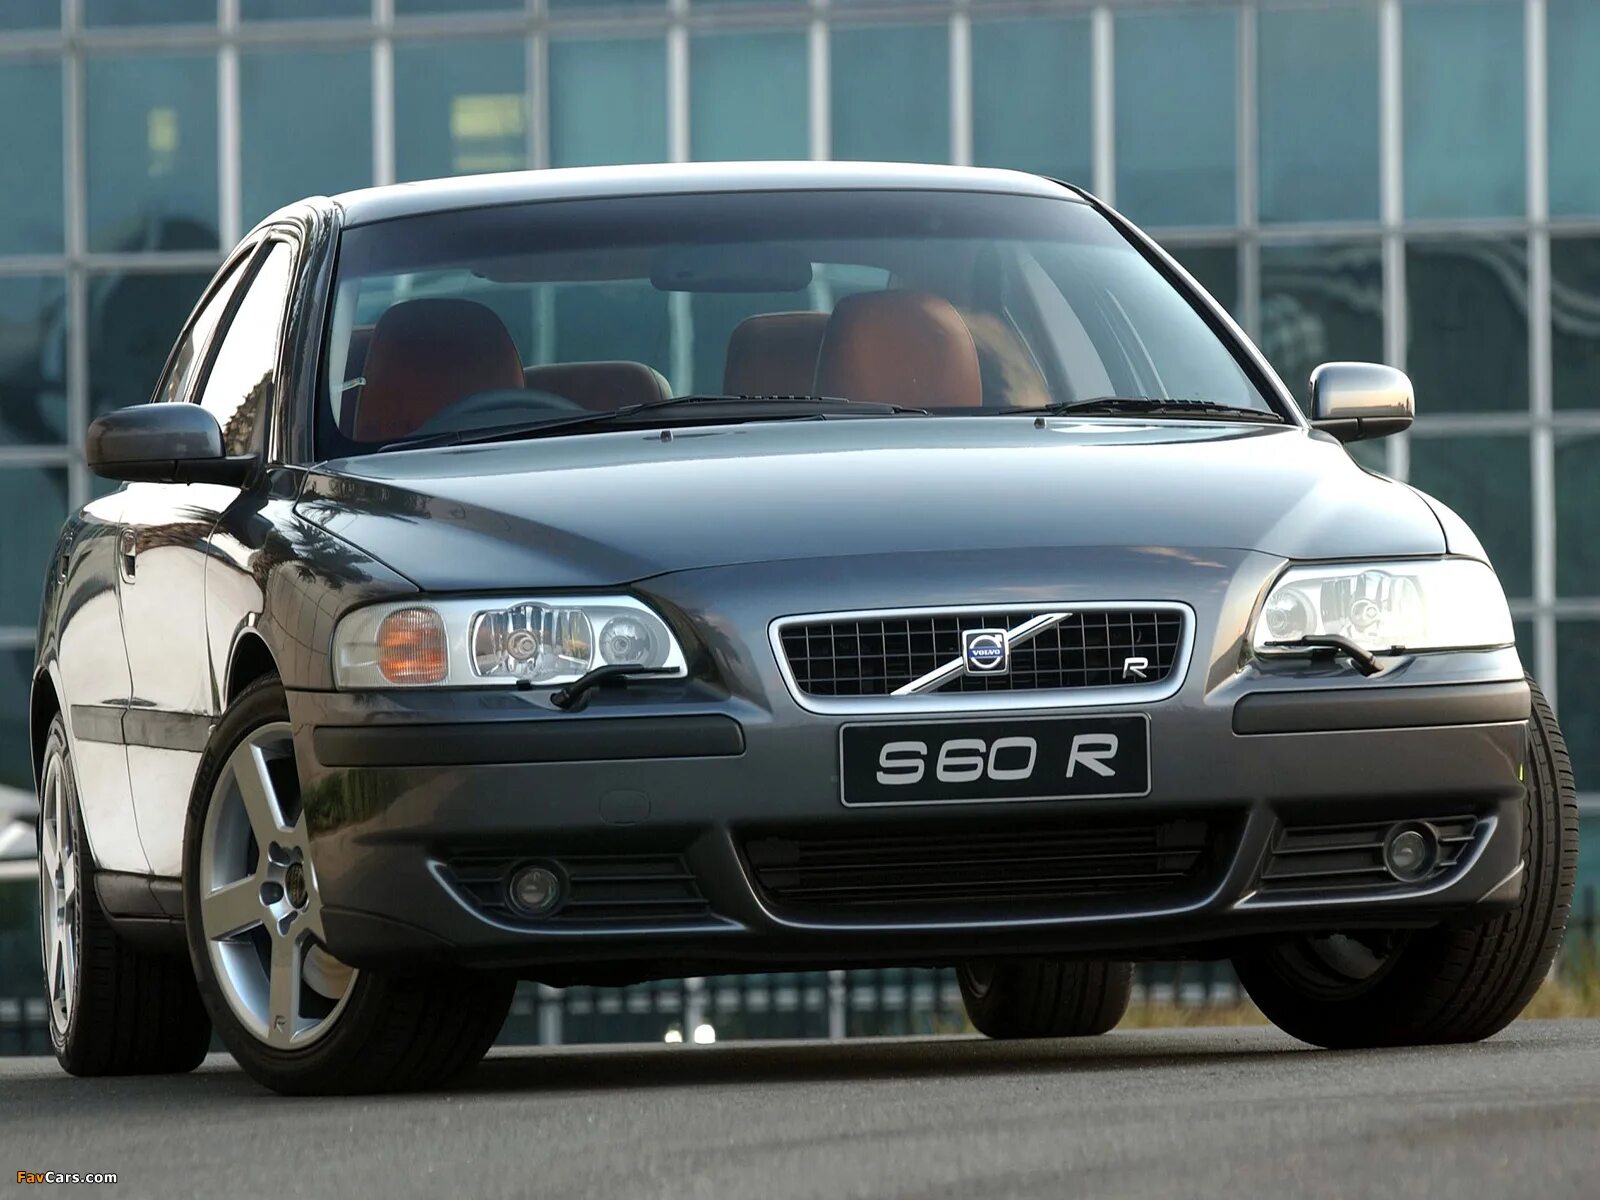 Volvo s60r. Volvo s60 r 2004. Volvo s60r 2008. Volvo s60r 2007.